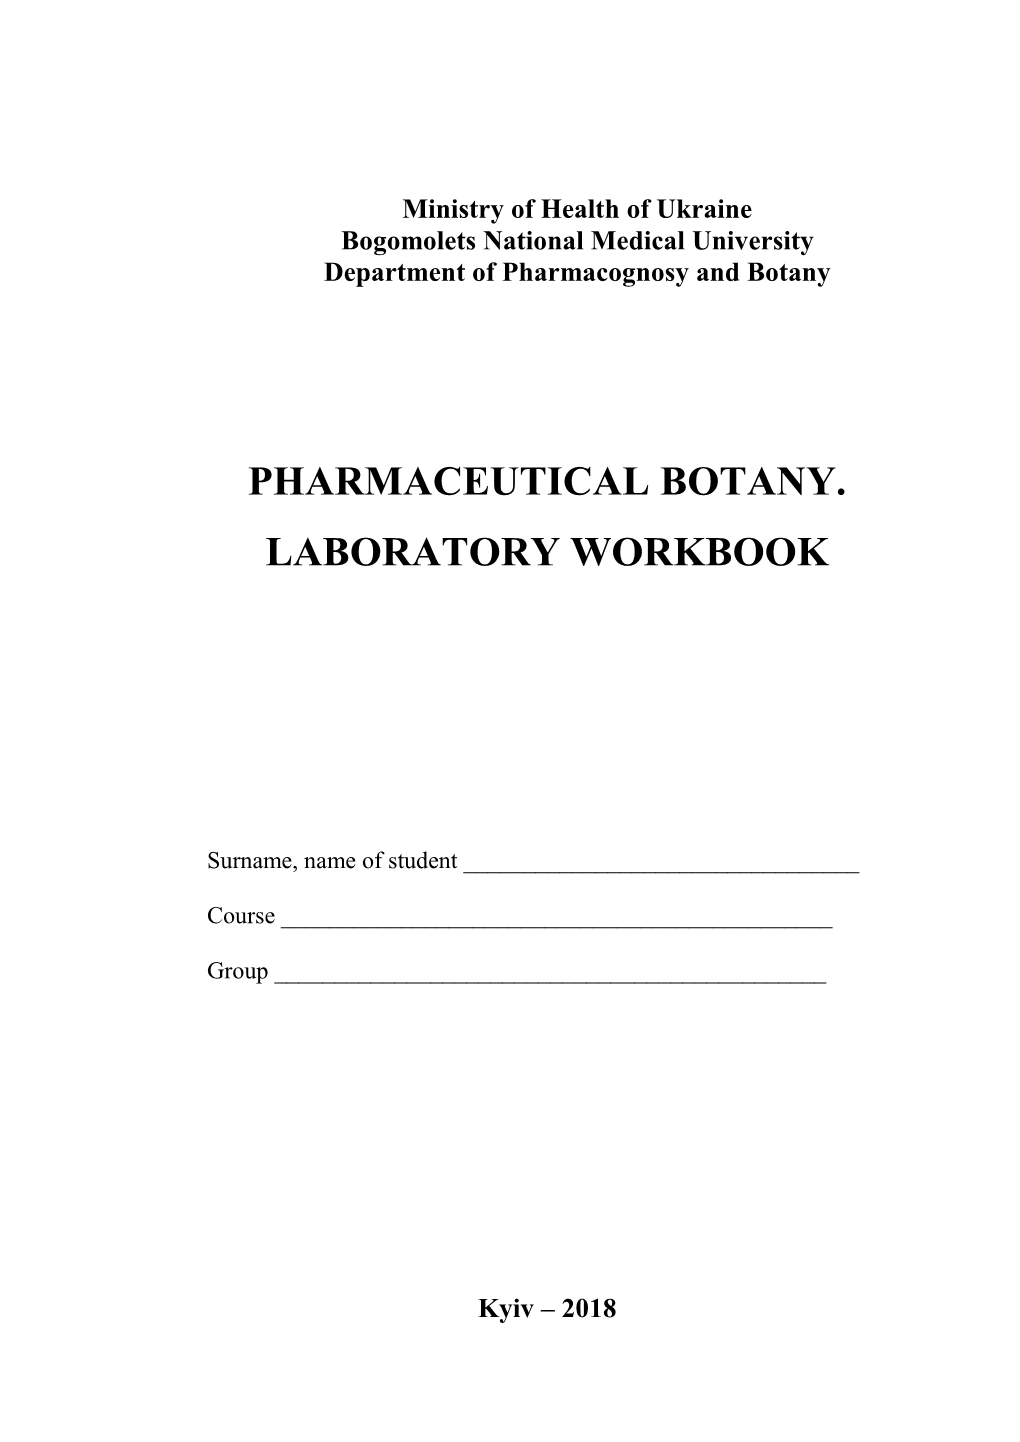 Pharmaceutical Botany. Laboratory Workbook